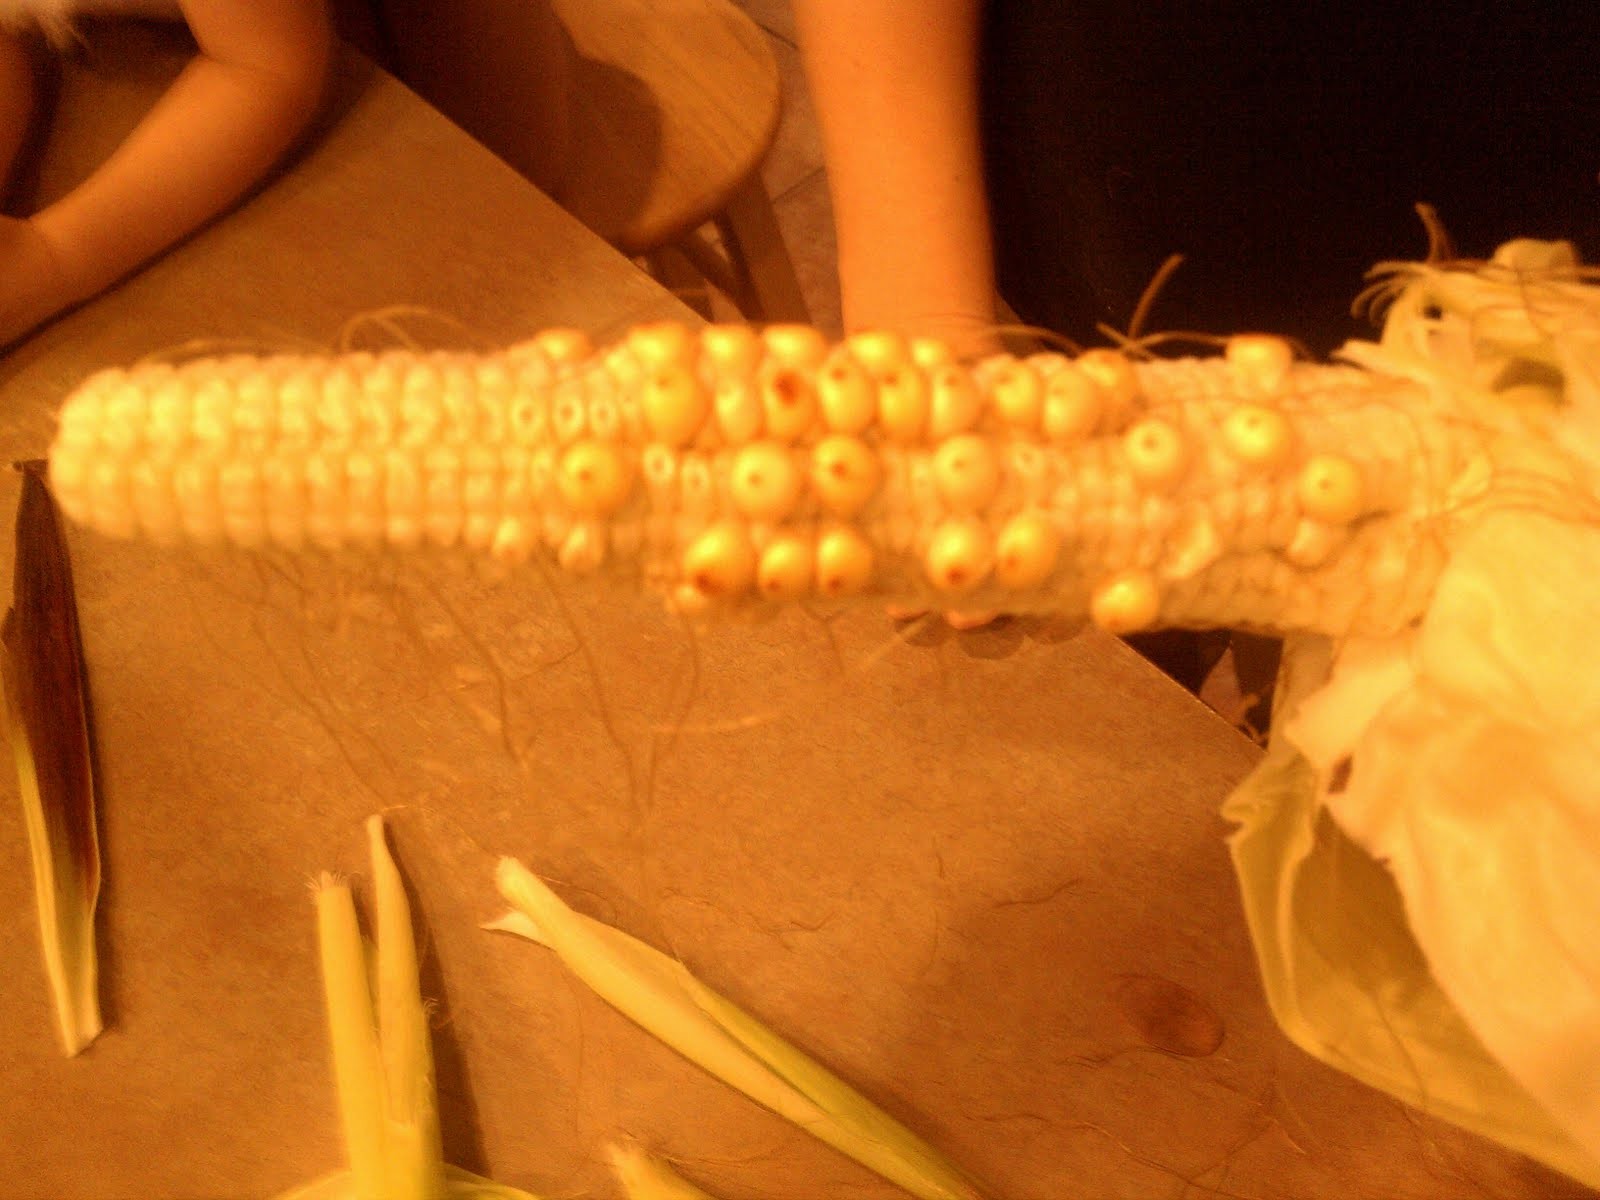 Unpollinated corn